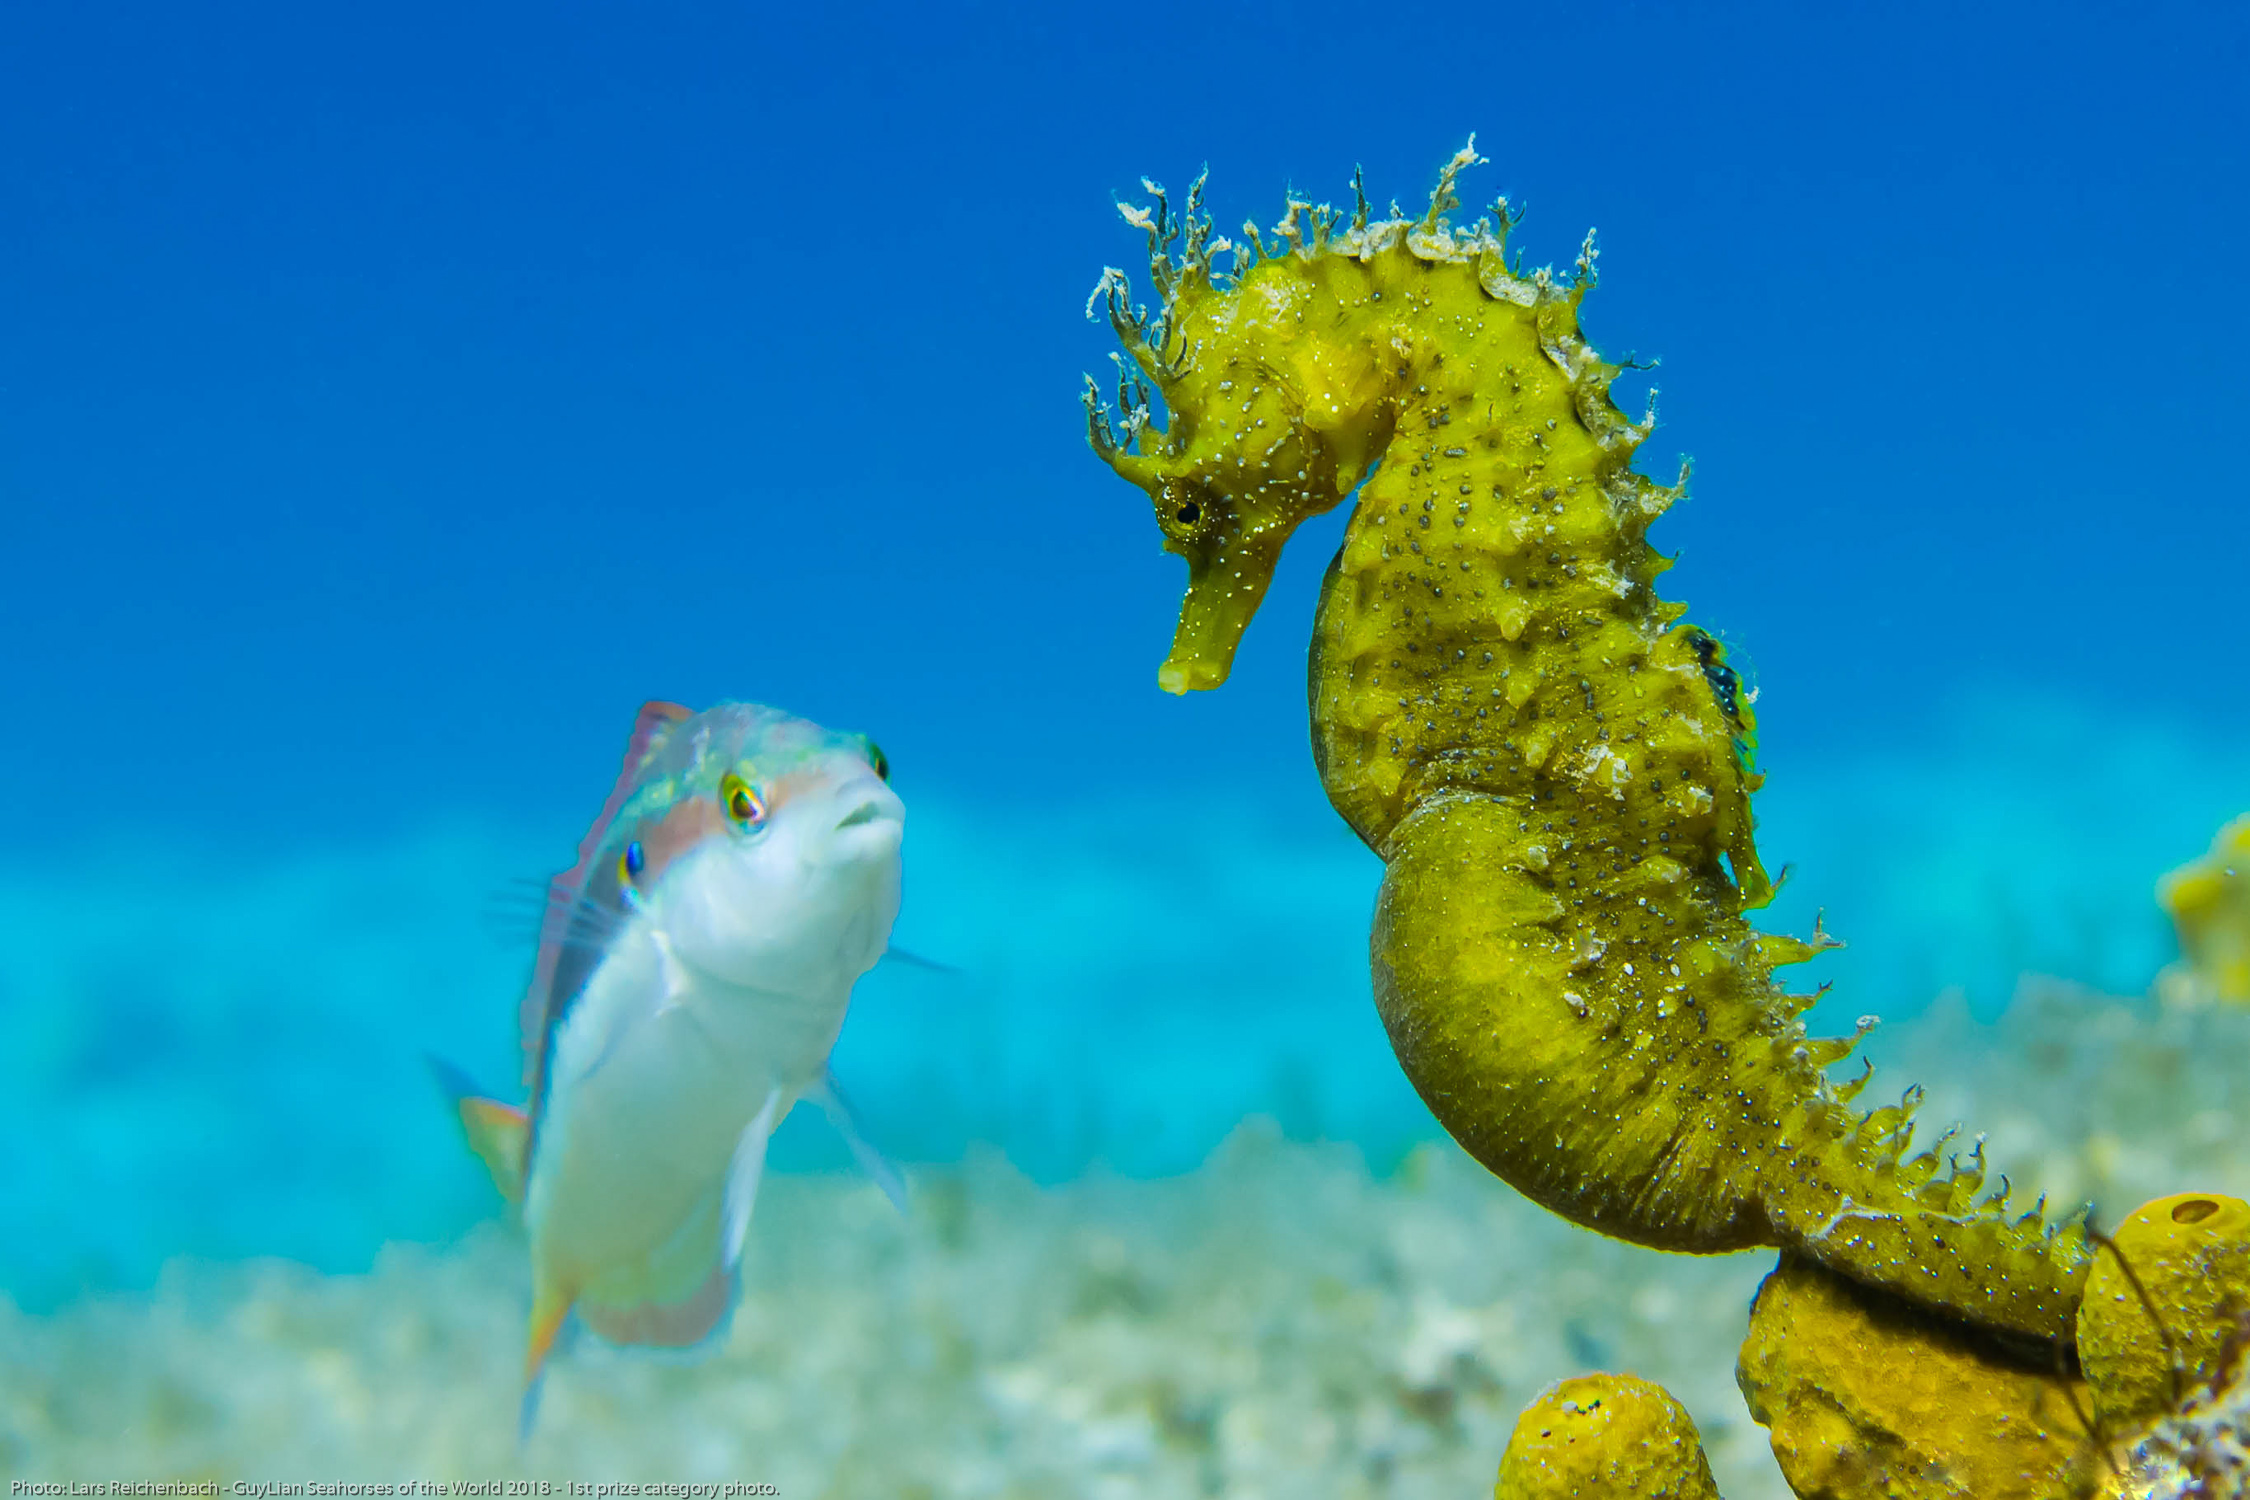 IUCN Seahorse, Pipefish & Seadragon